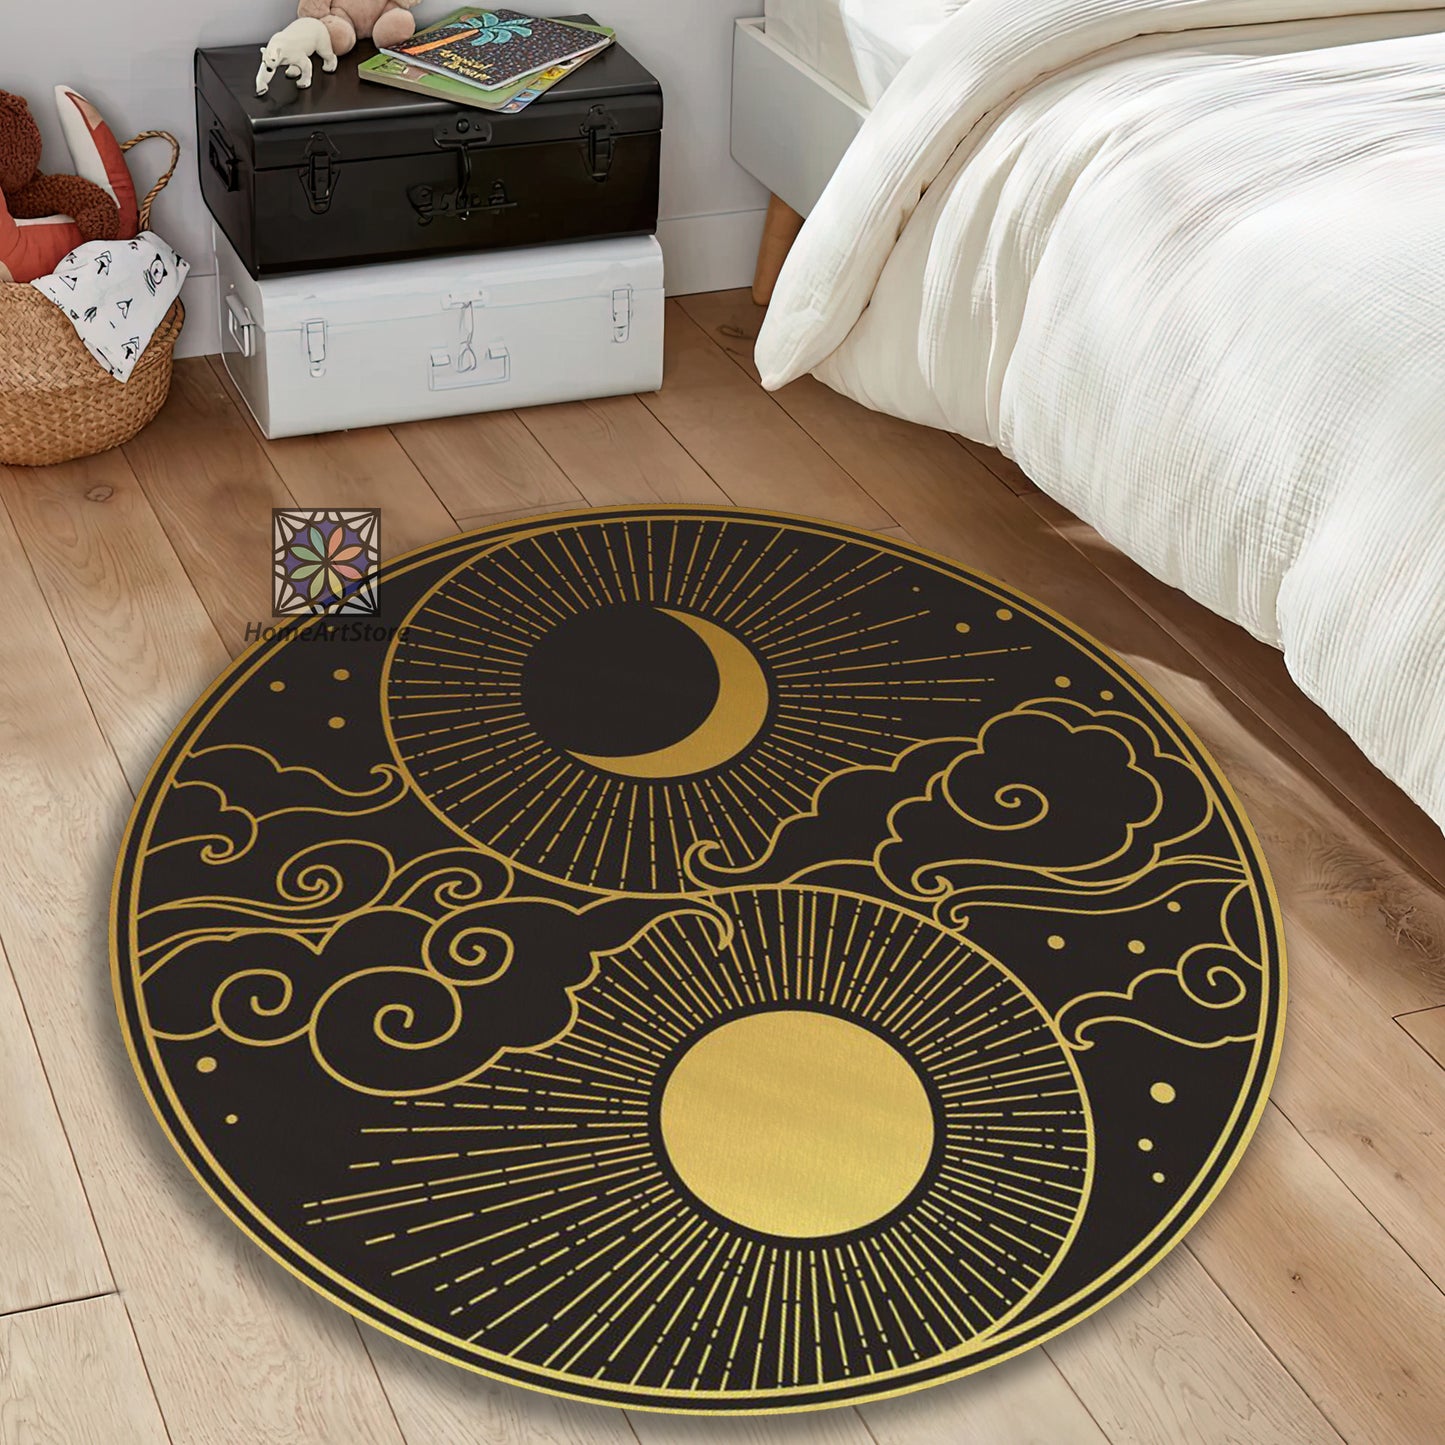 Yin Yang Rug, Yoga Mat, Sun and Moon Themed Carpet, Meditation Decor